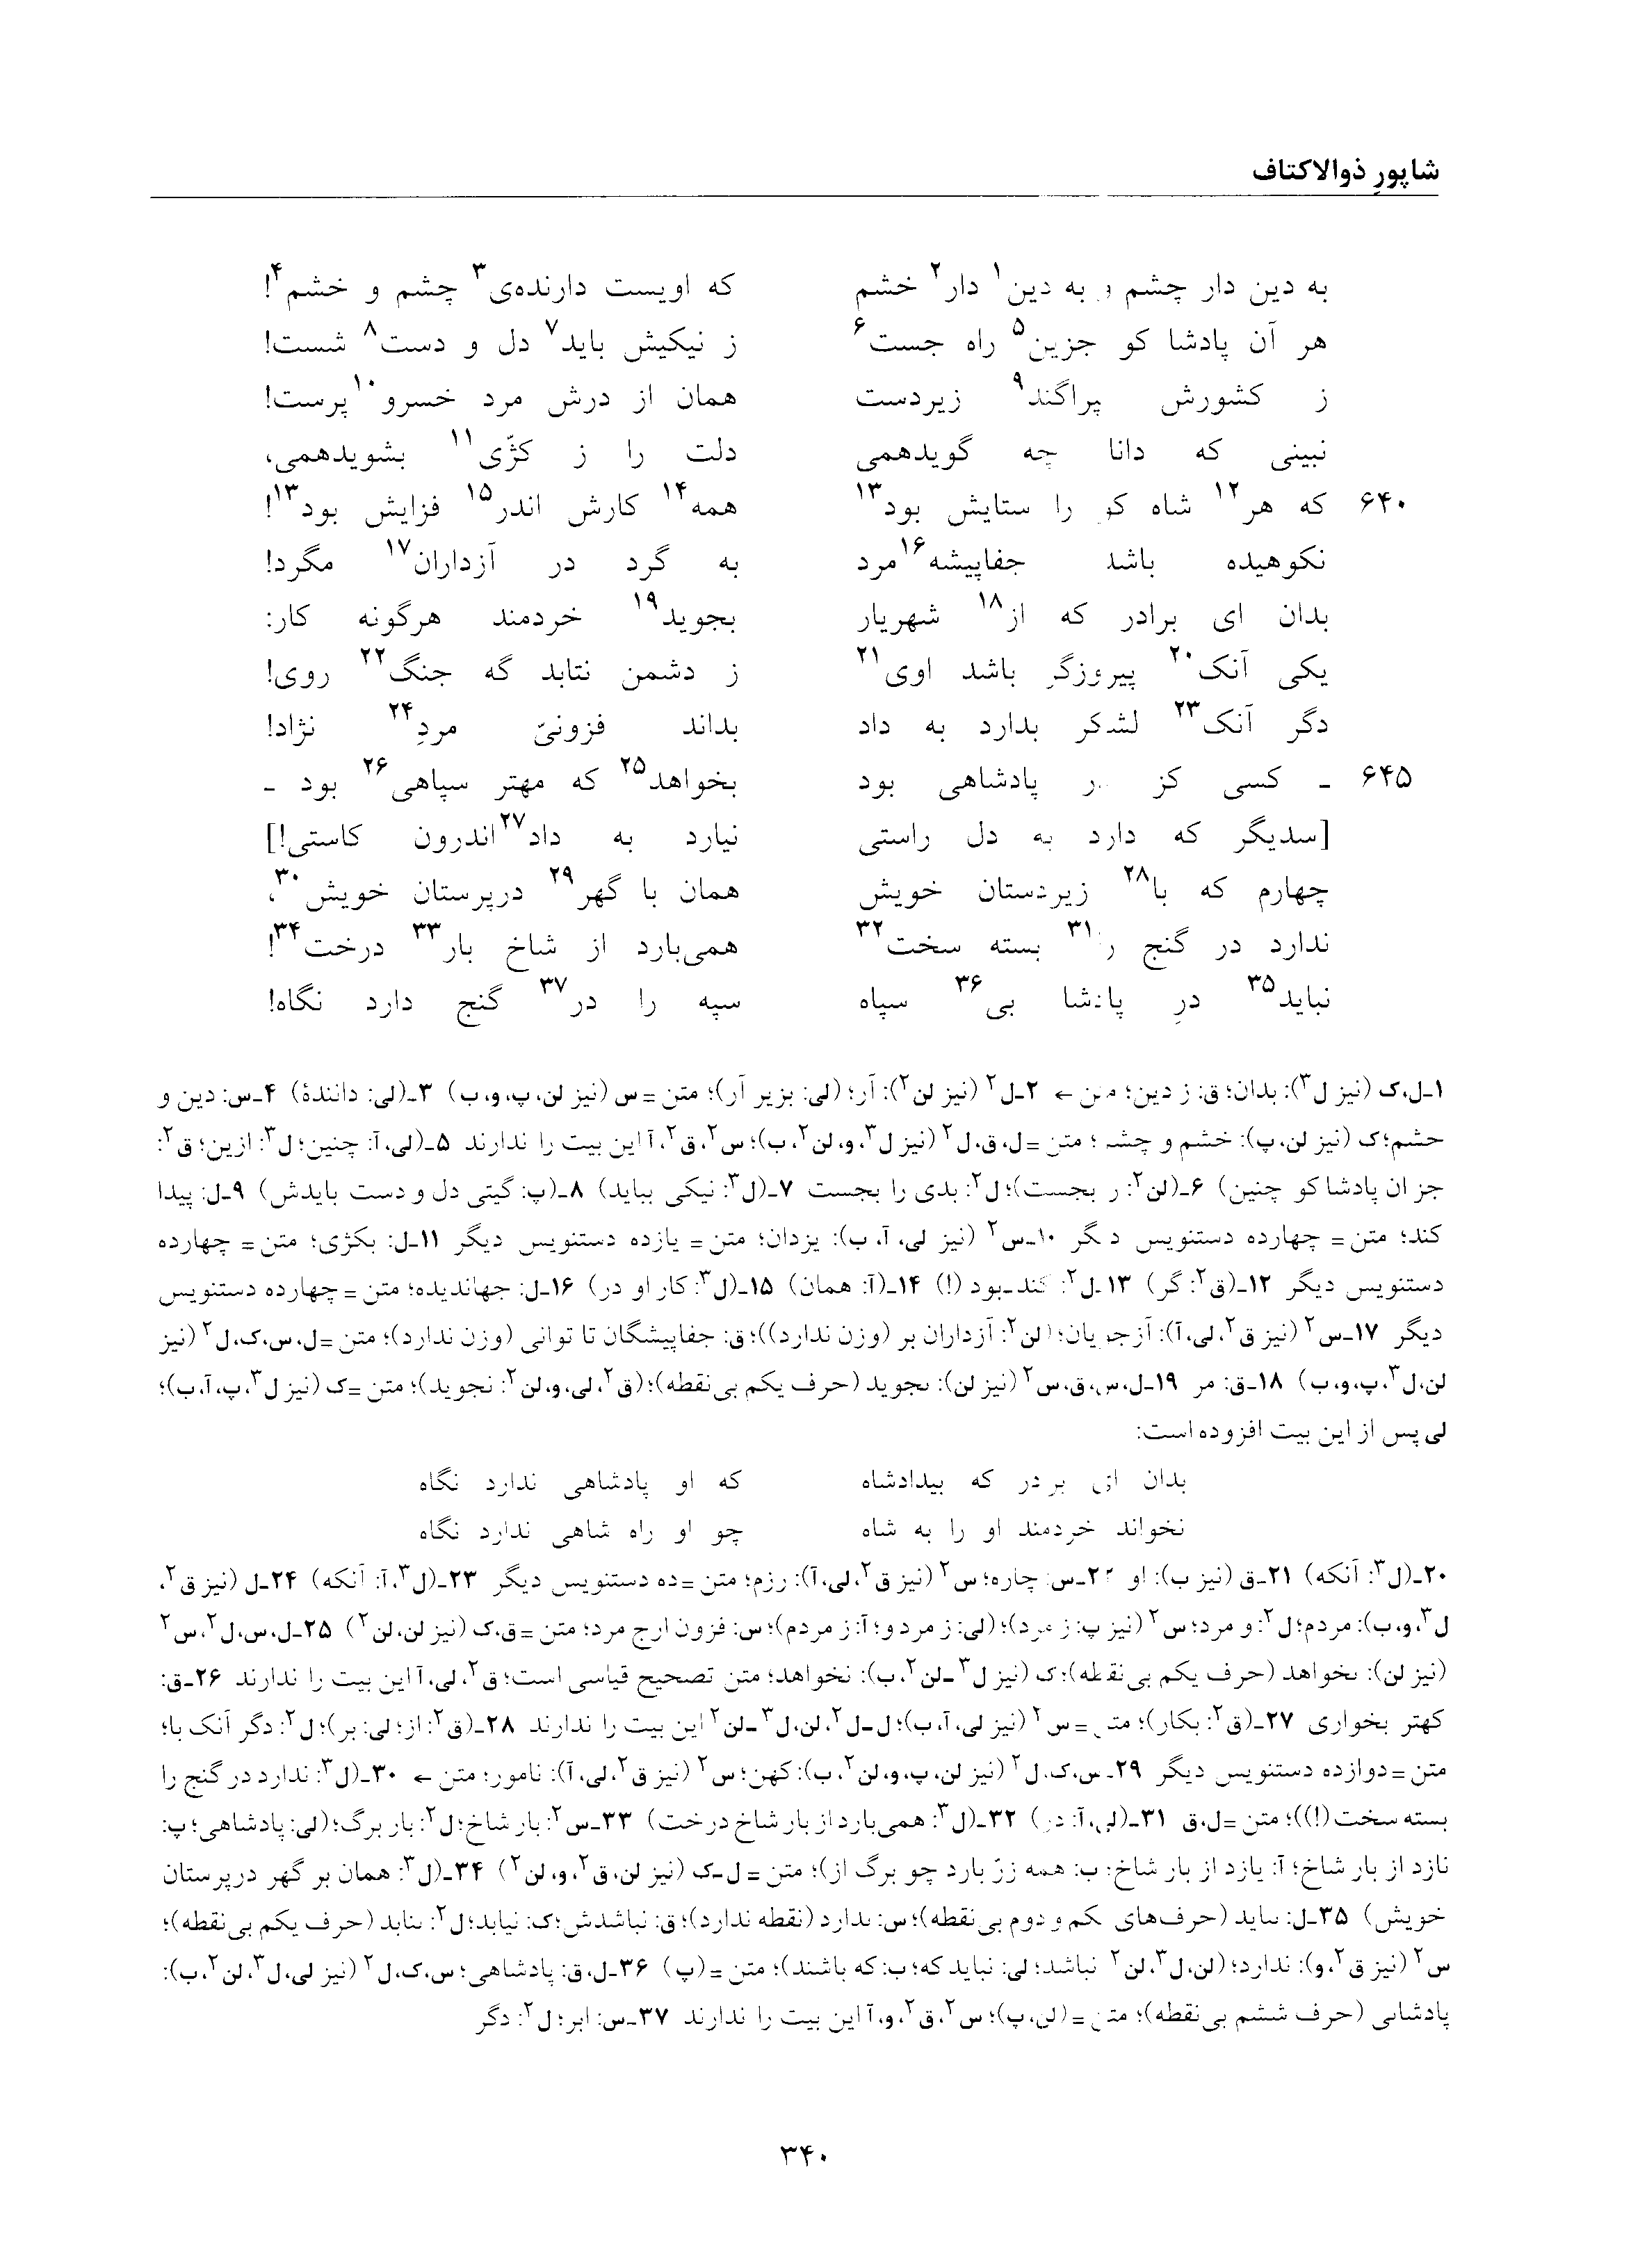 vol. 6, p. 340